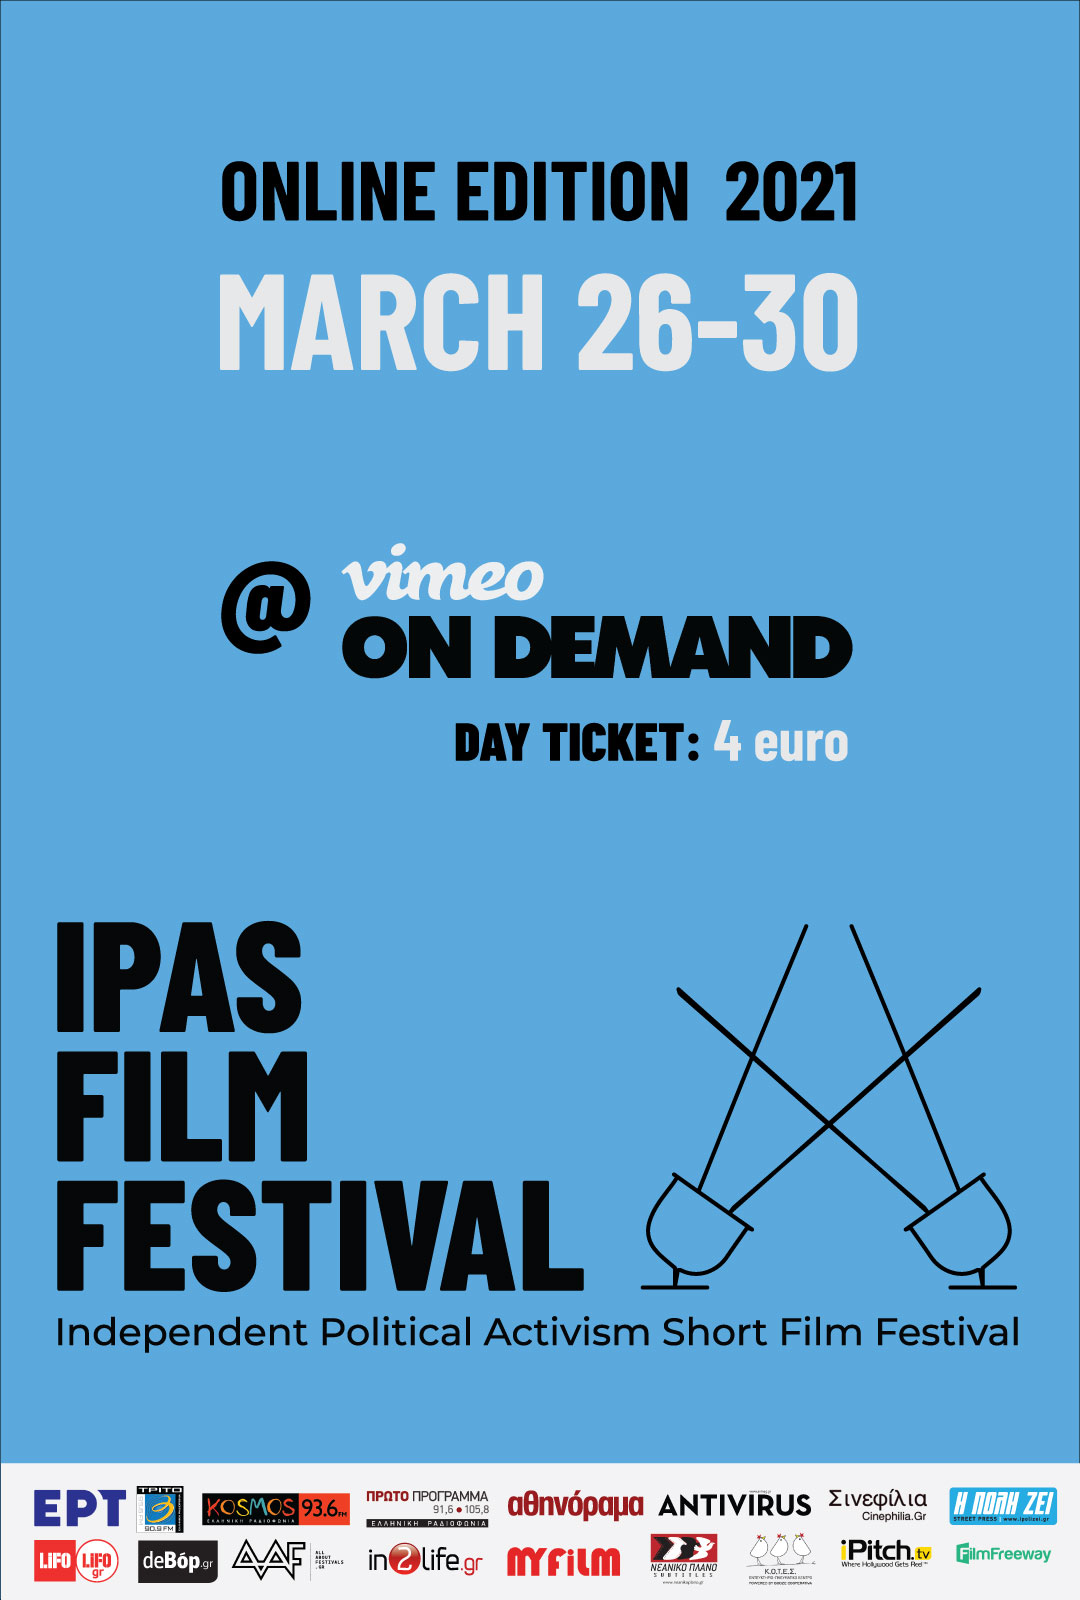 Η επίσημη αφίσα του Ipas Film Festival 2021 (4ο Ανεξάρτητο Πολιτικό Ακτιβιστικό Φεστιβάλ Ταινιών Μικρού Μήκους)